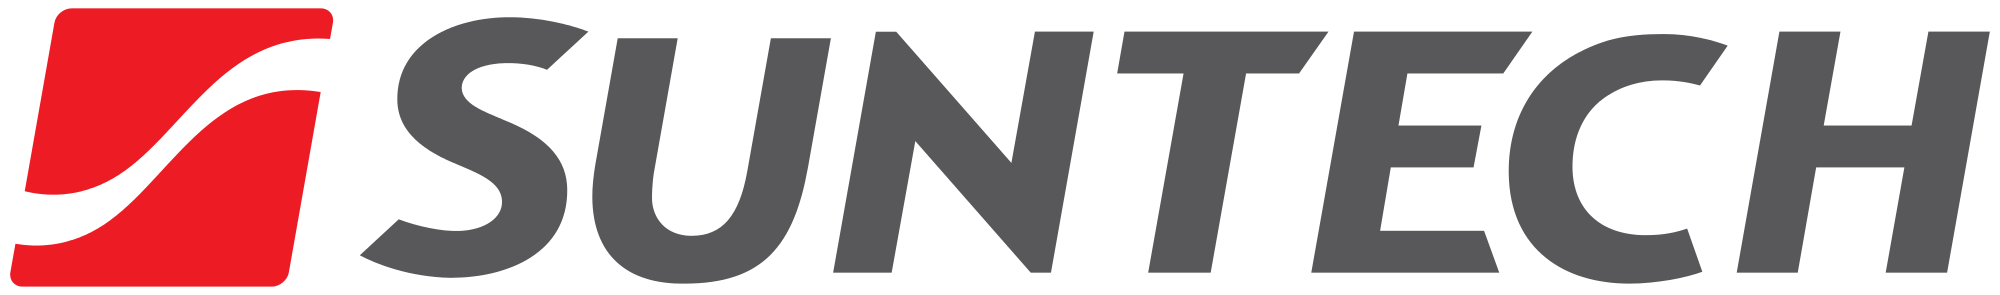 Suntech Brand Logo